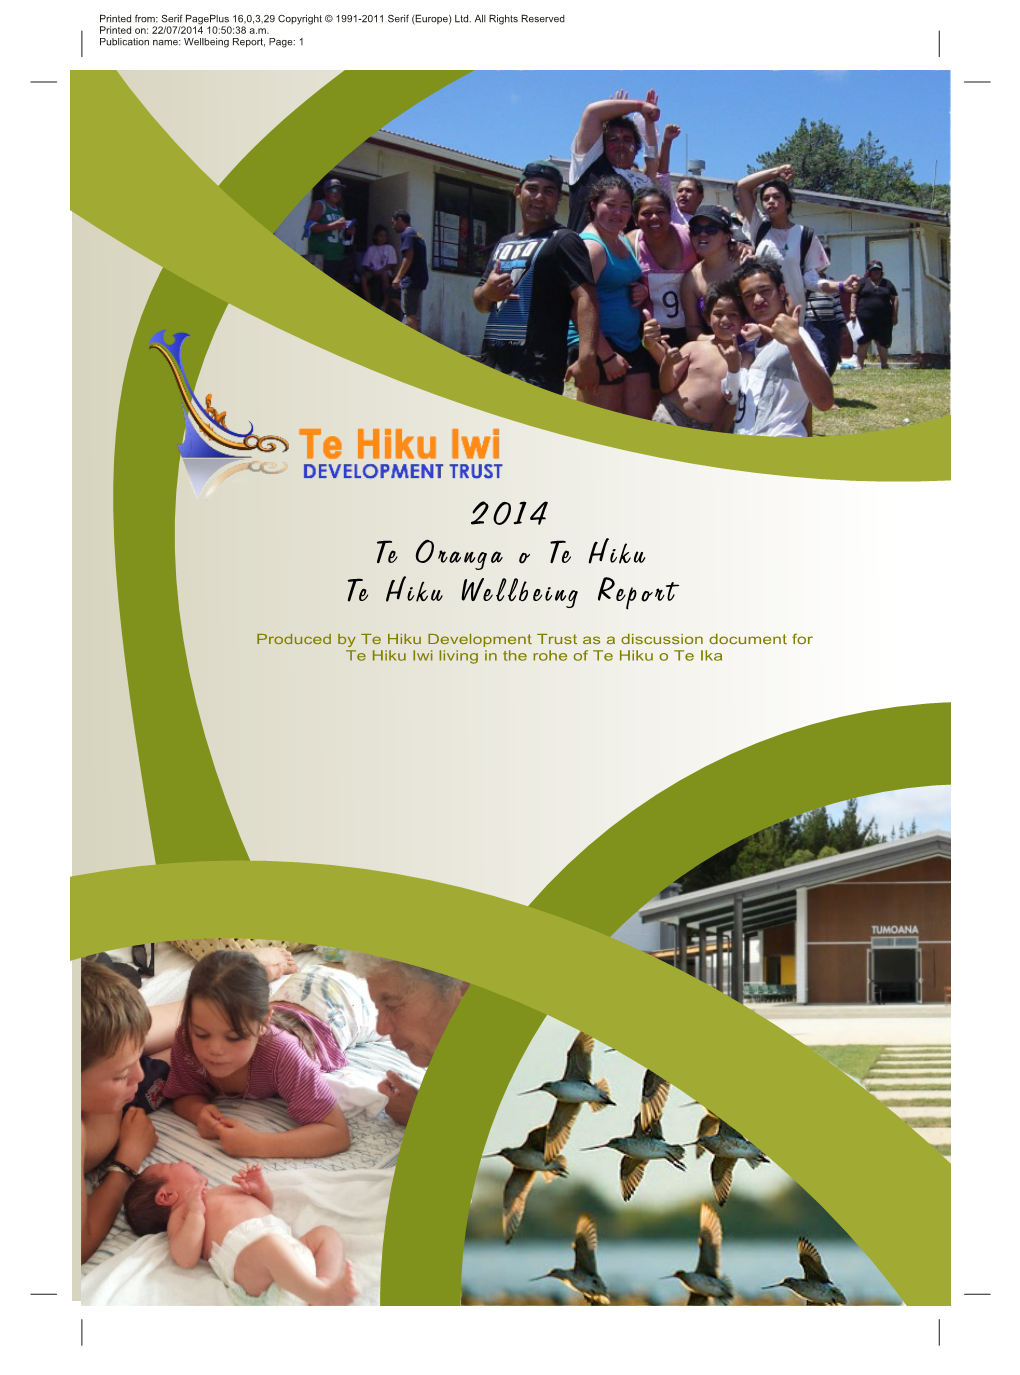 2014 Te Oranga O Te Hiku Te Hiku Wellbeing Report